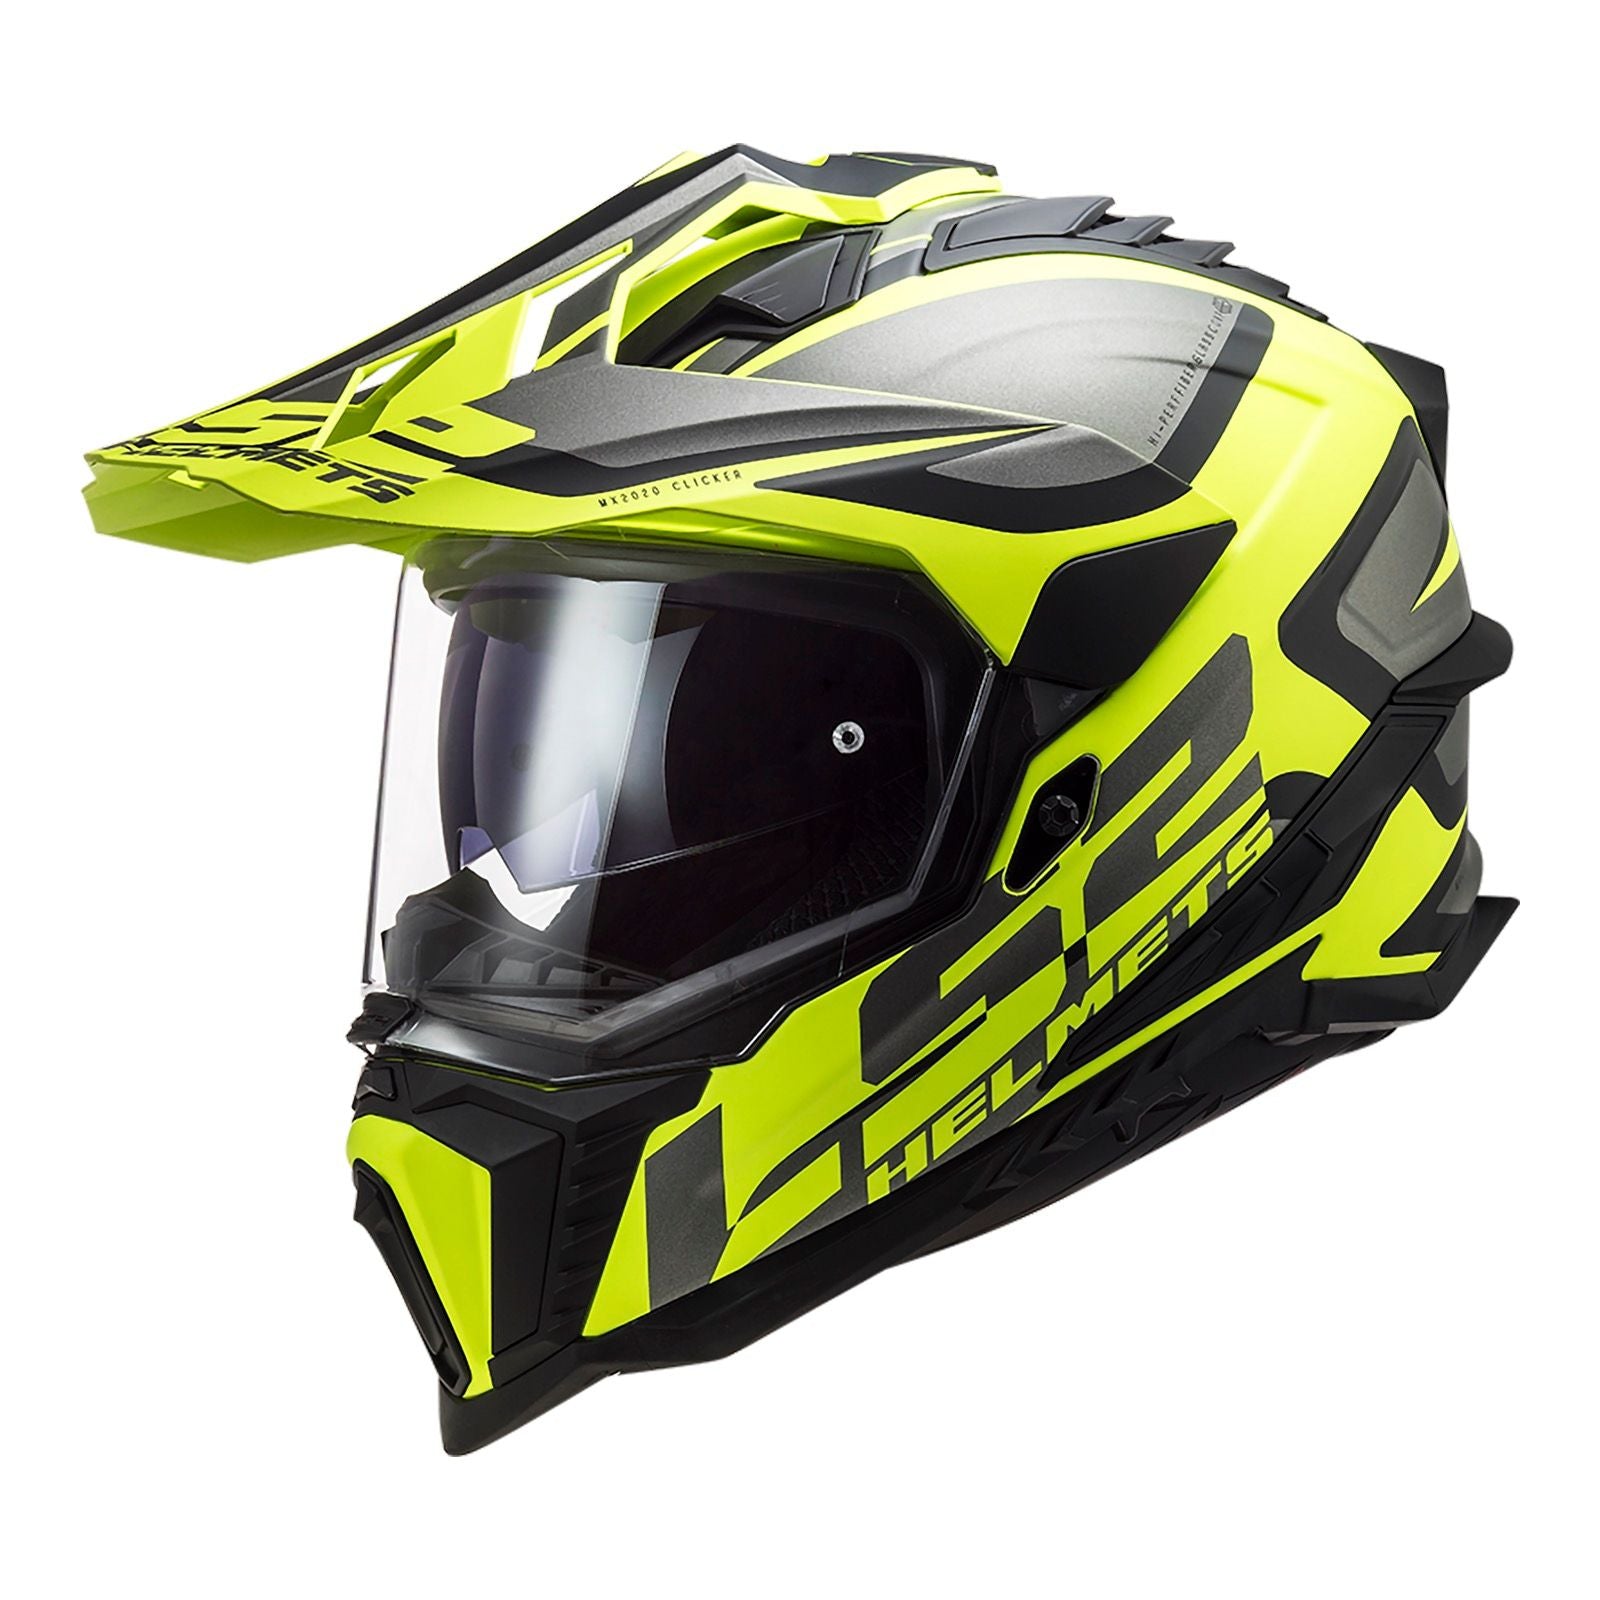 New LS2 Explorer Alter Helmet - Matte Black / Hi-Vis (2XL) #LS2MX701ALTMBY2XL